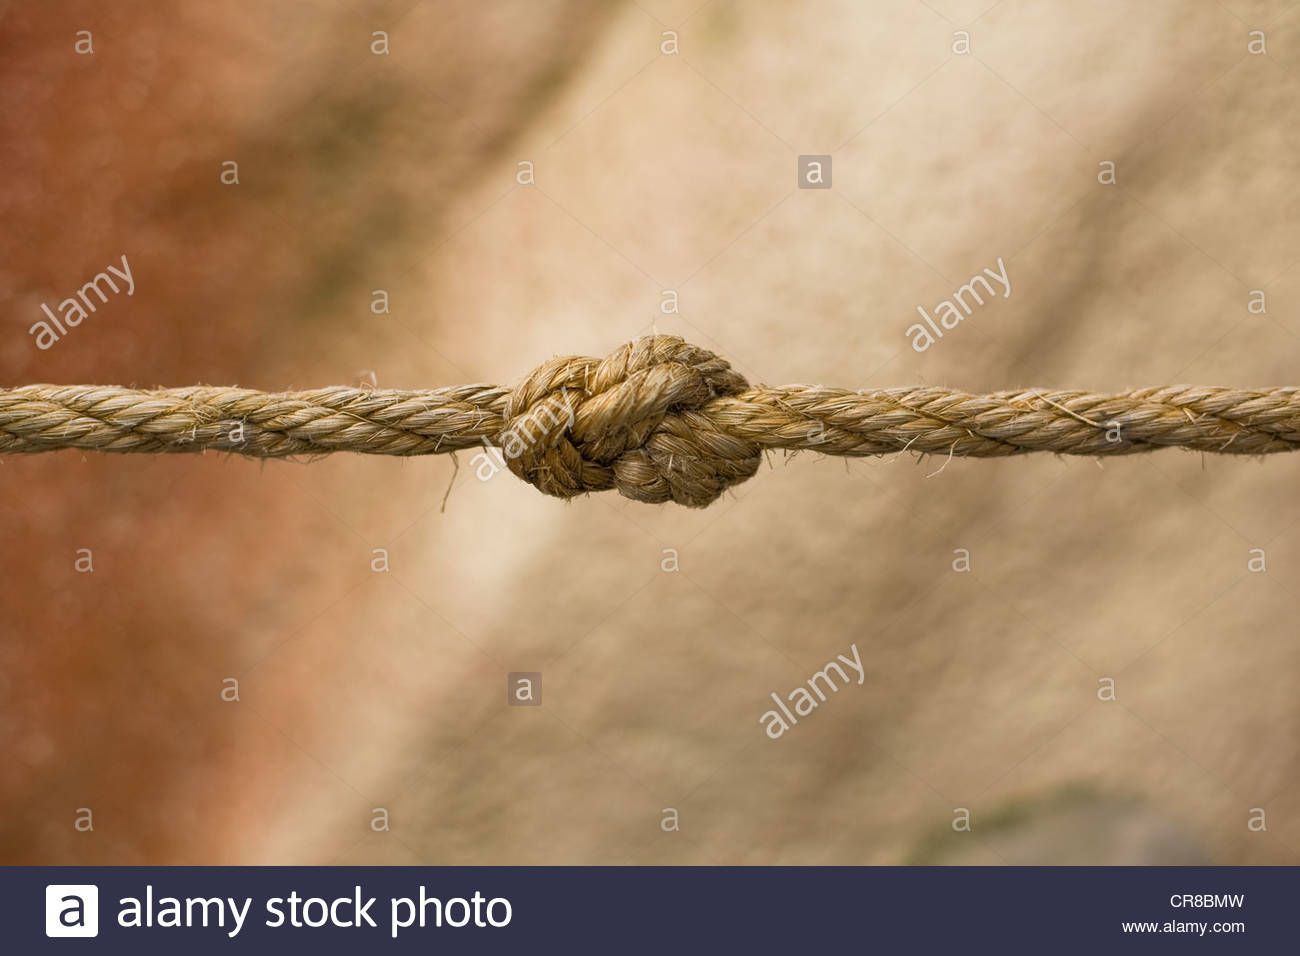 Mature granny rope